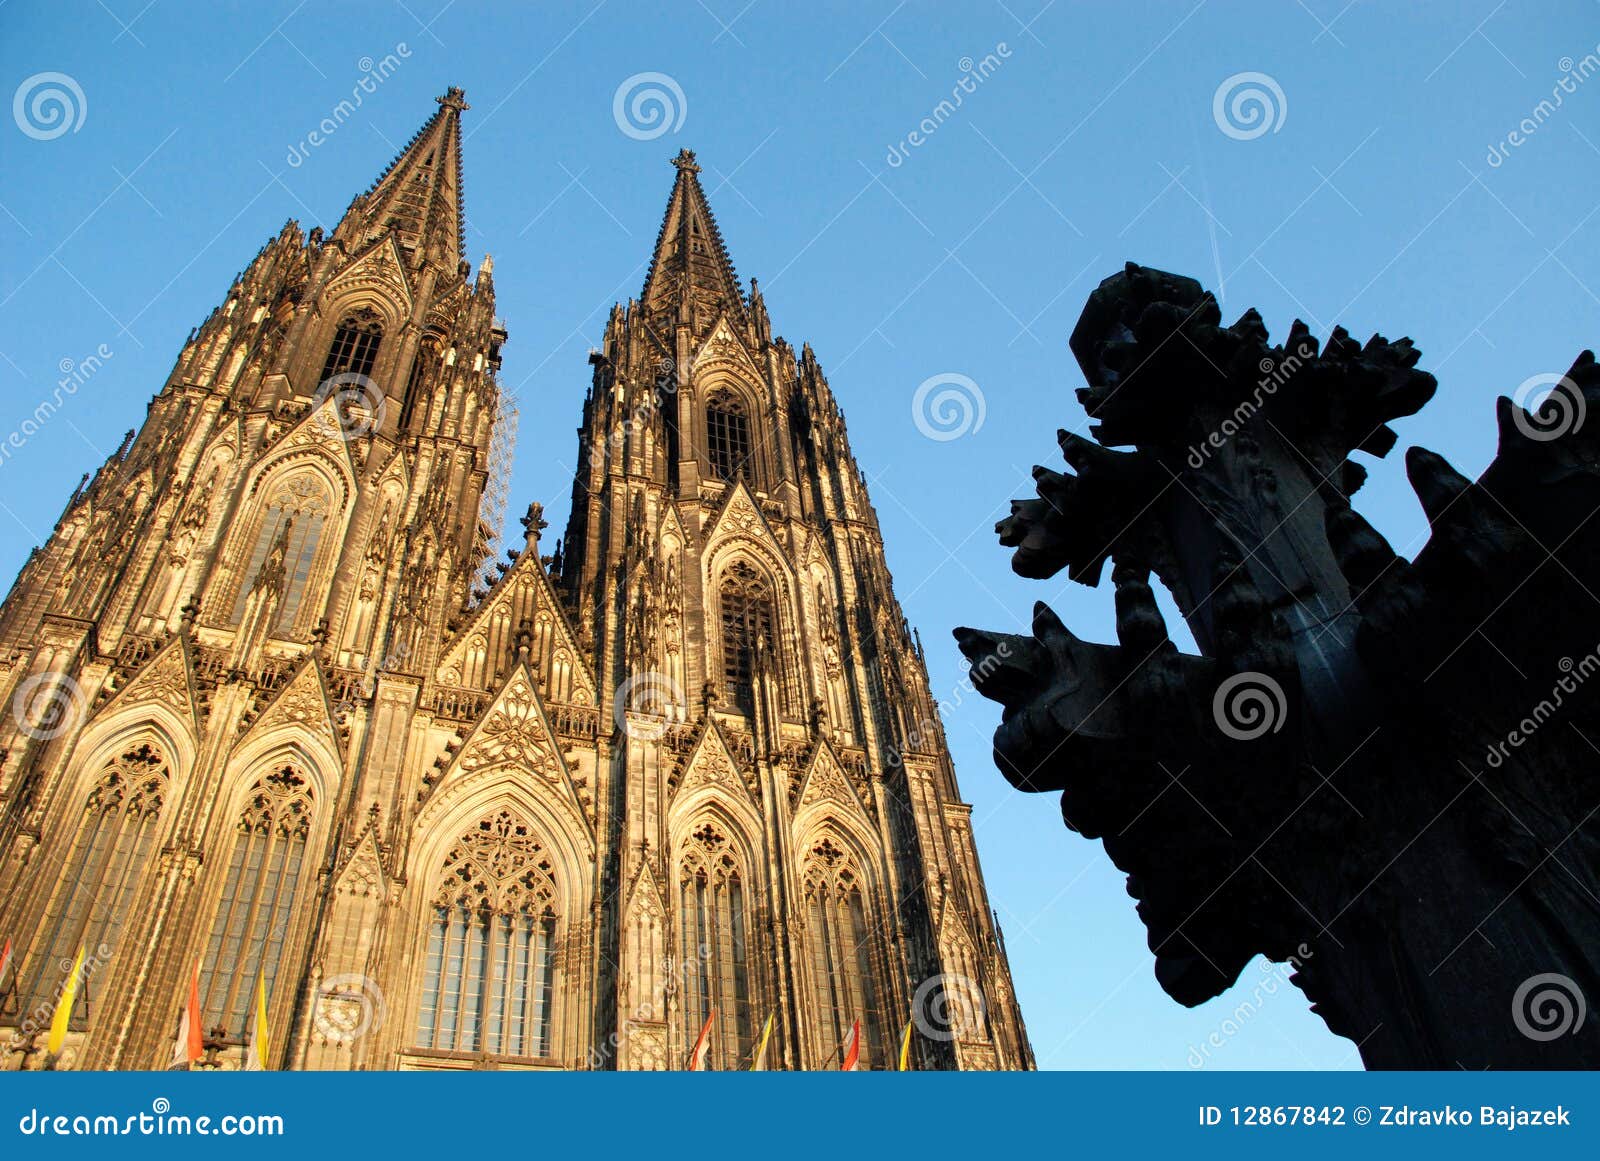 Köln Cathedral27. Köln-Kathedrale (Kolner Dom, amtlicher Name Hohe Domkirche Str. Peter und Maria) ist eins der bekanntesten Architekturdenkmäler in Deutschland und ist Kölns (Kolns) der meiste berühmte Grenzstein seit seiner Beendigung im des späten 19. jahrhunderts Jahrhundert gewesen. Die Kathedrale ist unter der Verwaltung der Römisch-katholischen Kirche und ist der Sitz des Erzbischofs von Köln. Von 1880 als seine Helme abgeschlossen wurden, war es die höchste Struktur der Welt und verlor seinen Namen auf der Beendigung des Washington-Denkmales im Washington DC, 1884. Köln-Kathedrale bleibt die zweit-höchste gotische Struktur in der Welt; nur der Steeple des Ulm Munster ist höher. Aufbau der gotischen Kirche fing 1248 und nahm, mit Unterbrechungen, mehr als 600 Jahre an abzuschließen - er wurde schließlich 1880 beendet. Die zwei Kontrolltürme sind hohe 157m, ist die Kathedrale 144m, das lang sind und breite 86m. Die Kathedrale wird Heiligen Peter eingesetzt und Mary.It wurde auf der Site eines römischen Tempels des 4. Jahrhunderts, ein quadratisches Gebäude aufgebaut, das als die ?älteste Kathedrale? bekannt und von Maternus, der erste christliche Bishop von Köln in Auftrag gegeben ist. Eine zweite Kirche, die auf der Site, die so genannte alte Kathedrale aufgebaut wurde, wurde in 818 abgeschlossen. Dieses brannte unten am 30. April 124